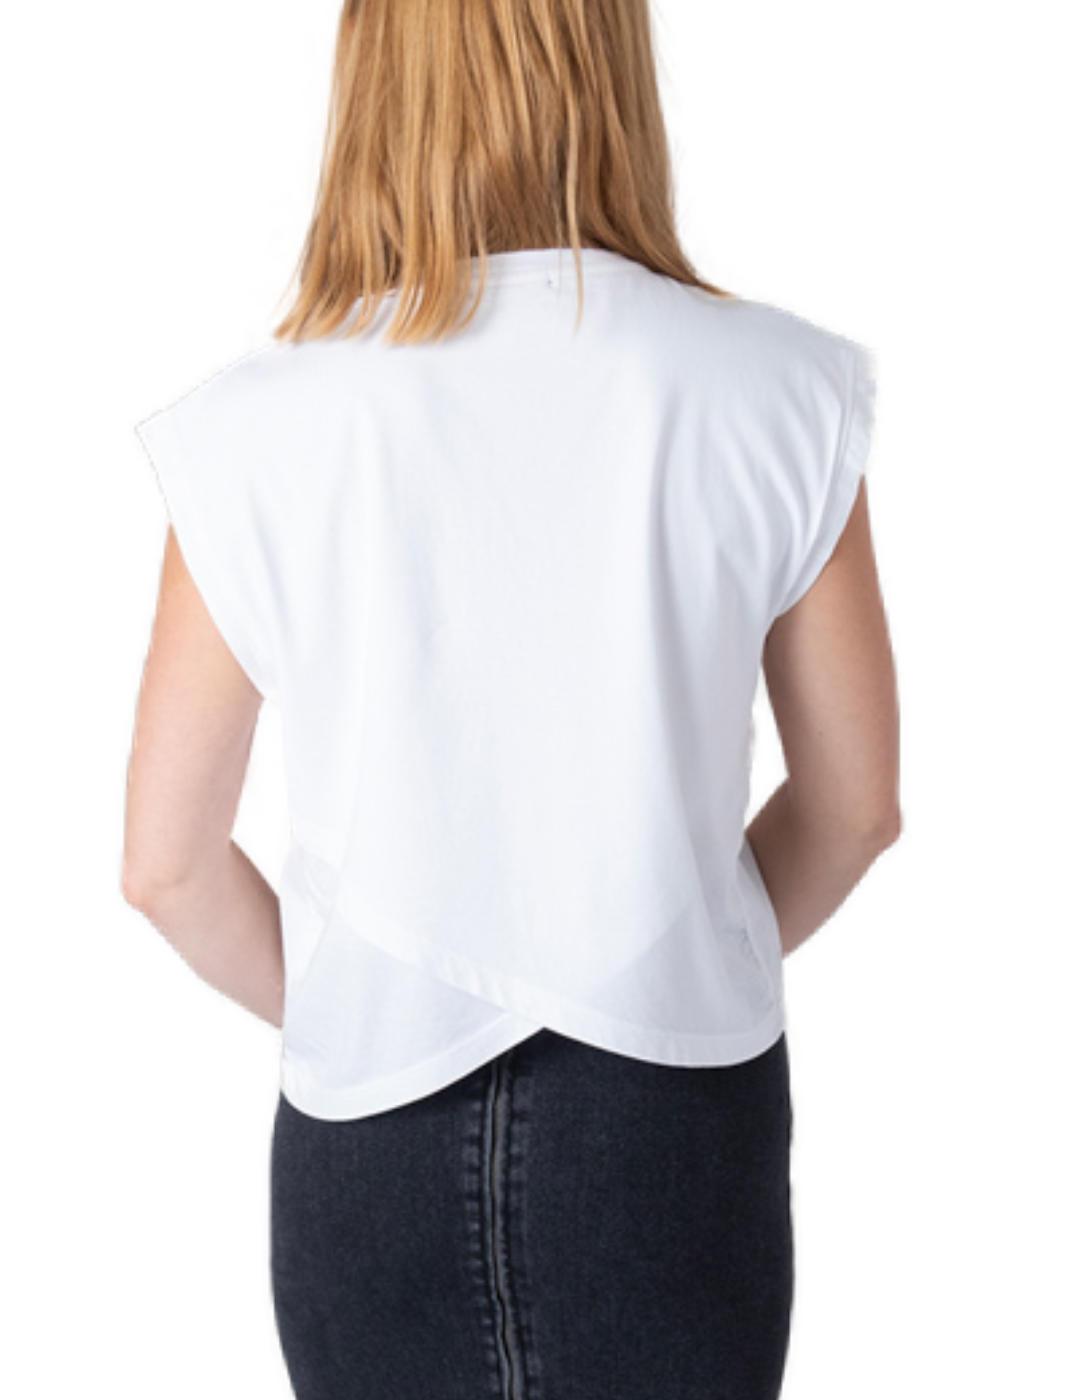 Camiseta Animosa Artemisia blanca manga corta para mujer